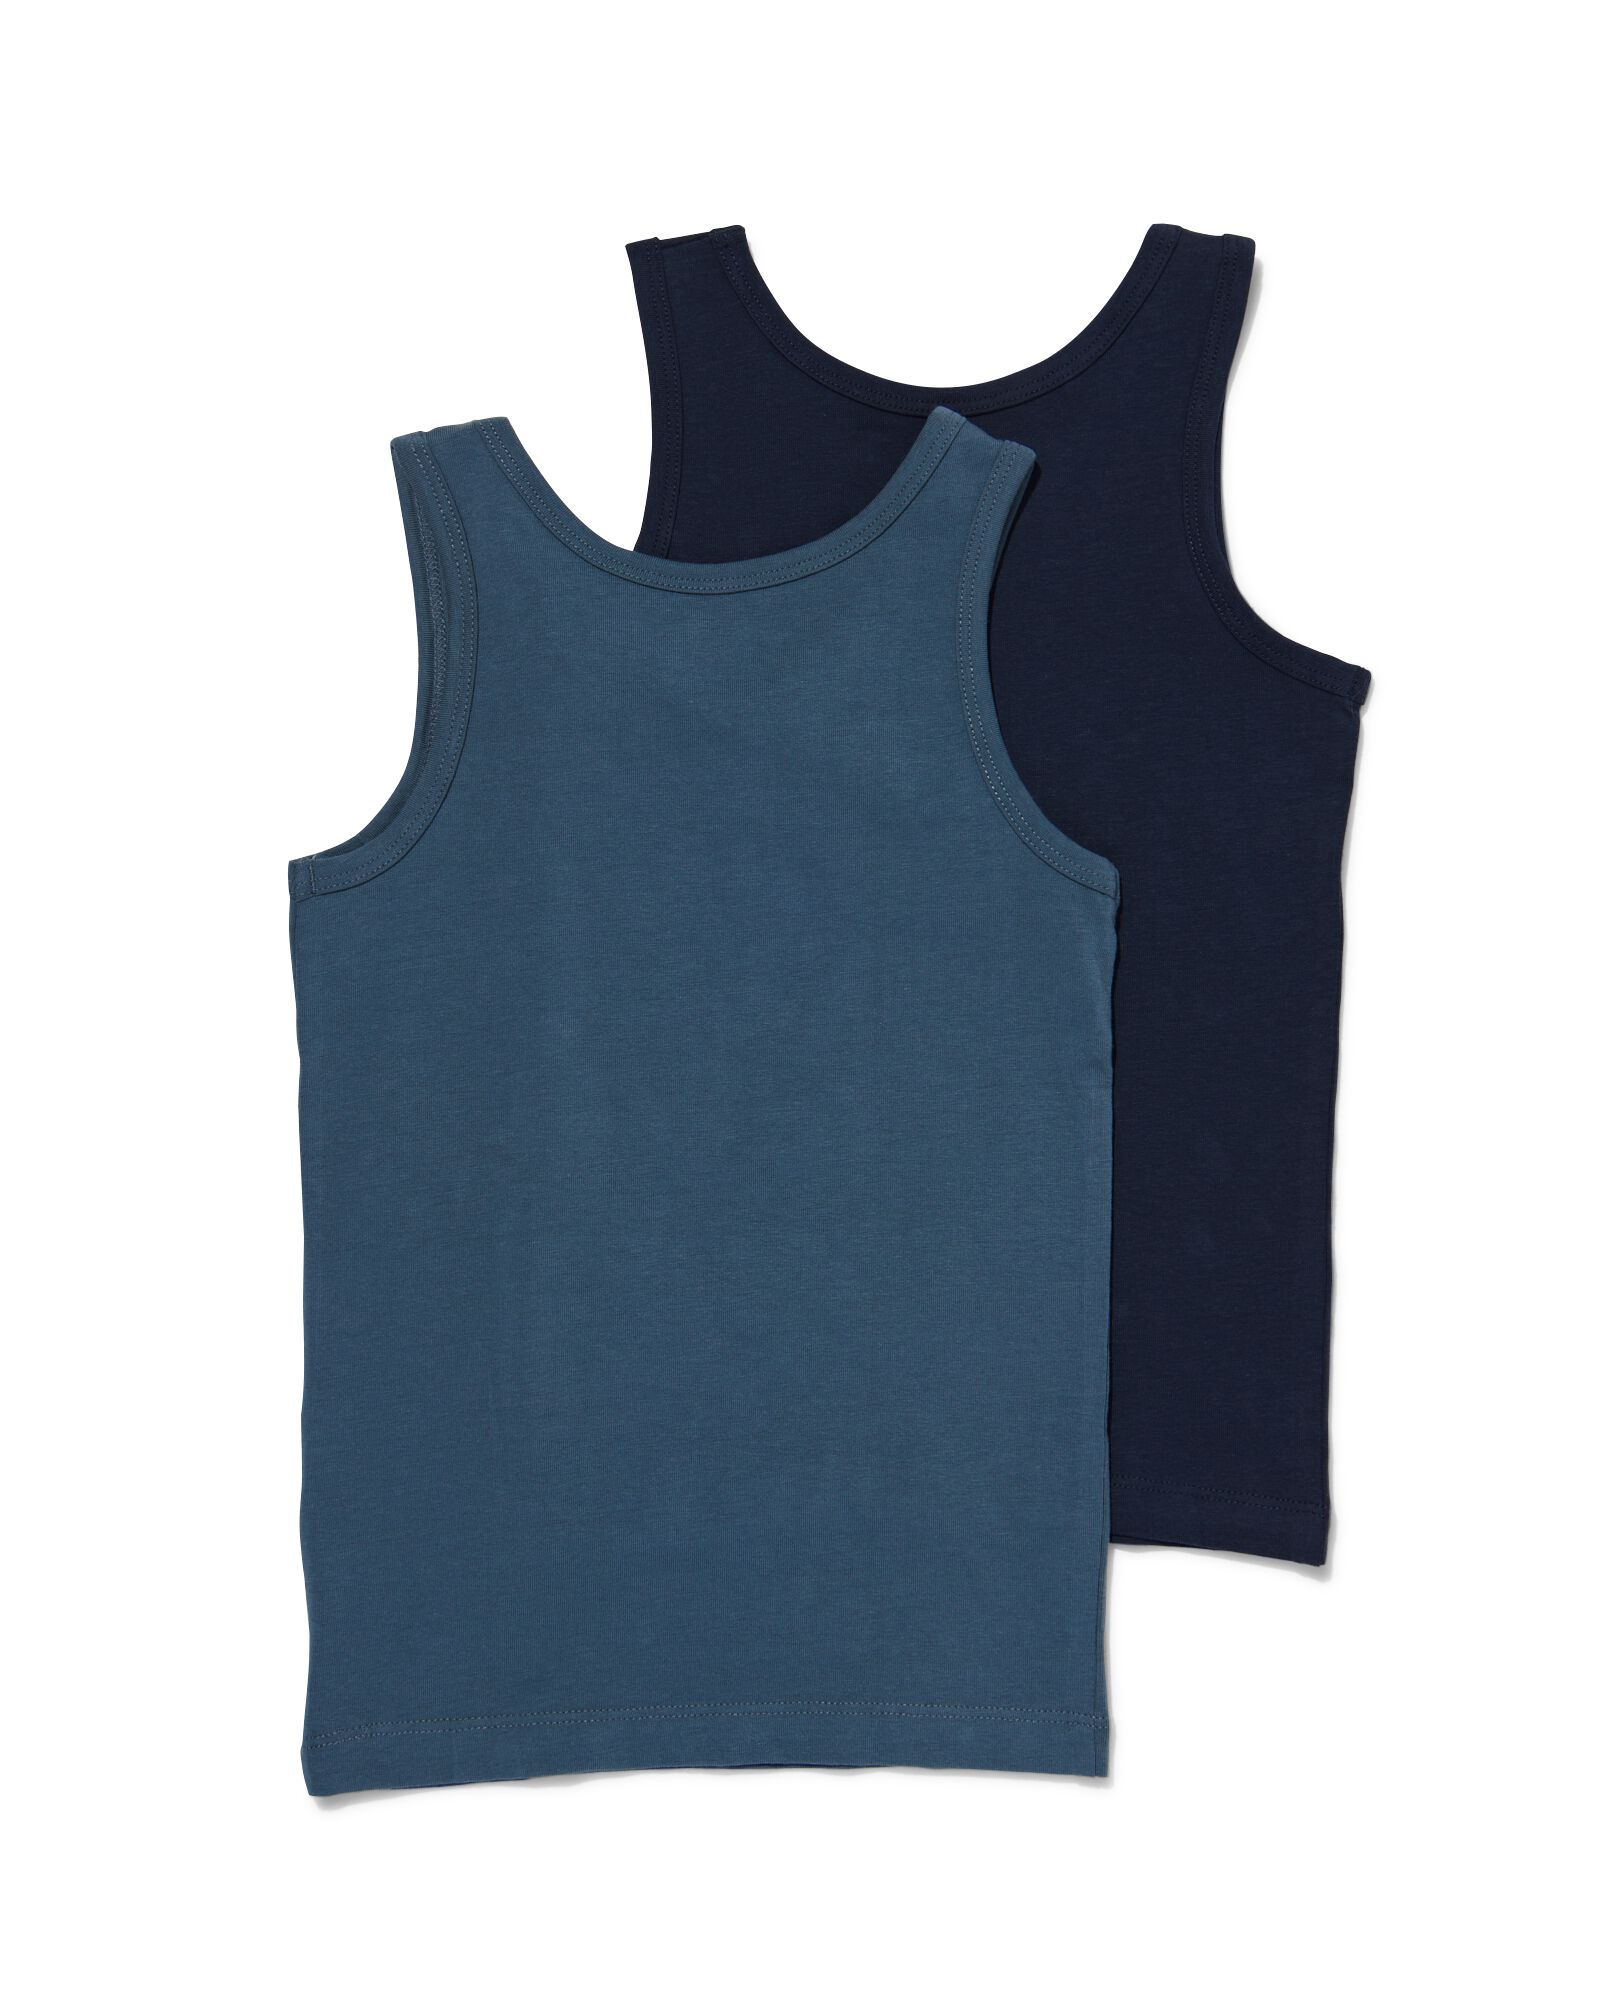 2er-Pack Kinder-Hemden dunkelblau 146/152 - 19280726 - HEMA